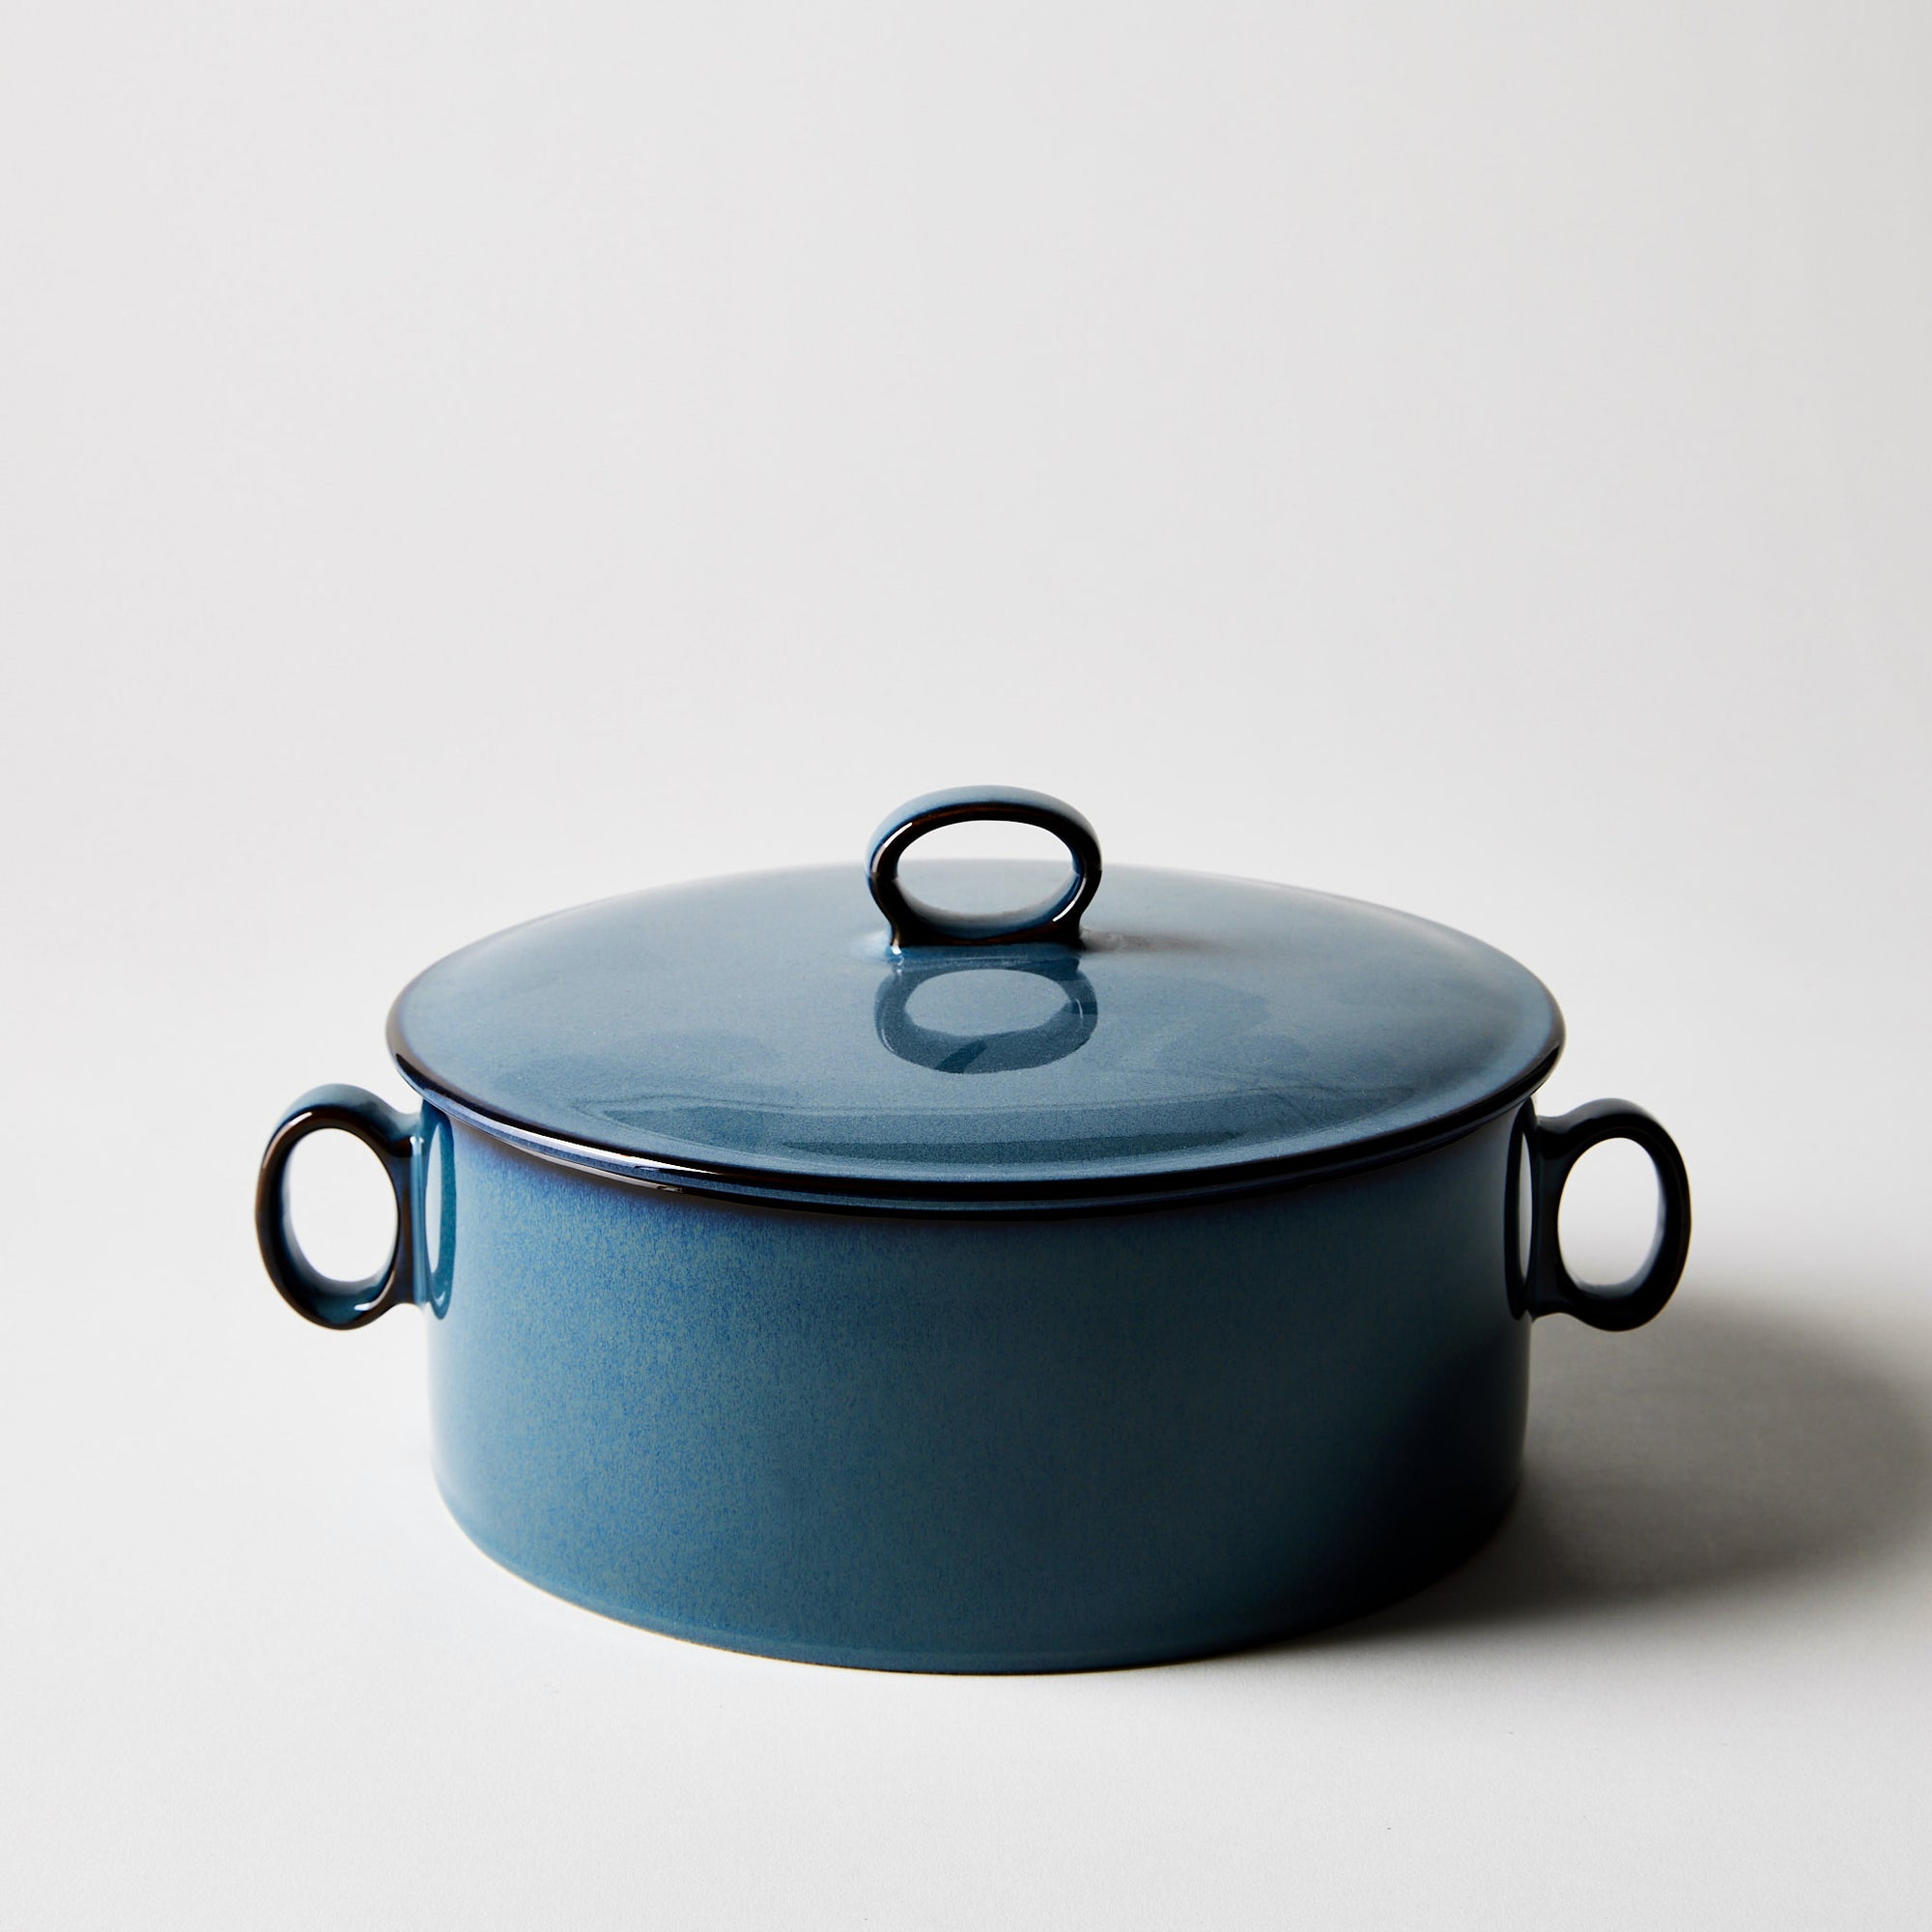 https://www.dansk.com/cdn/shop/products/2022-0303_dansk_generations-ii-dinnerware_nordic-blue-round-casserole-with-lid_silo_ty-mecham_2000x.jpg?v=1650650484